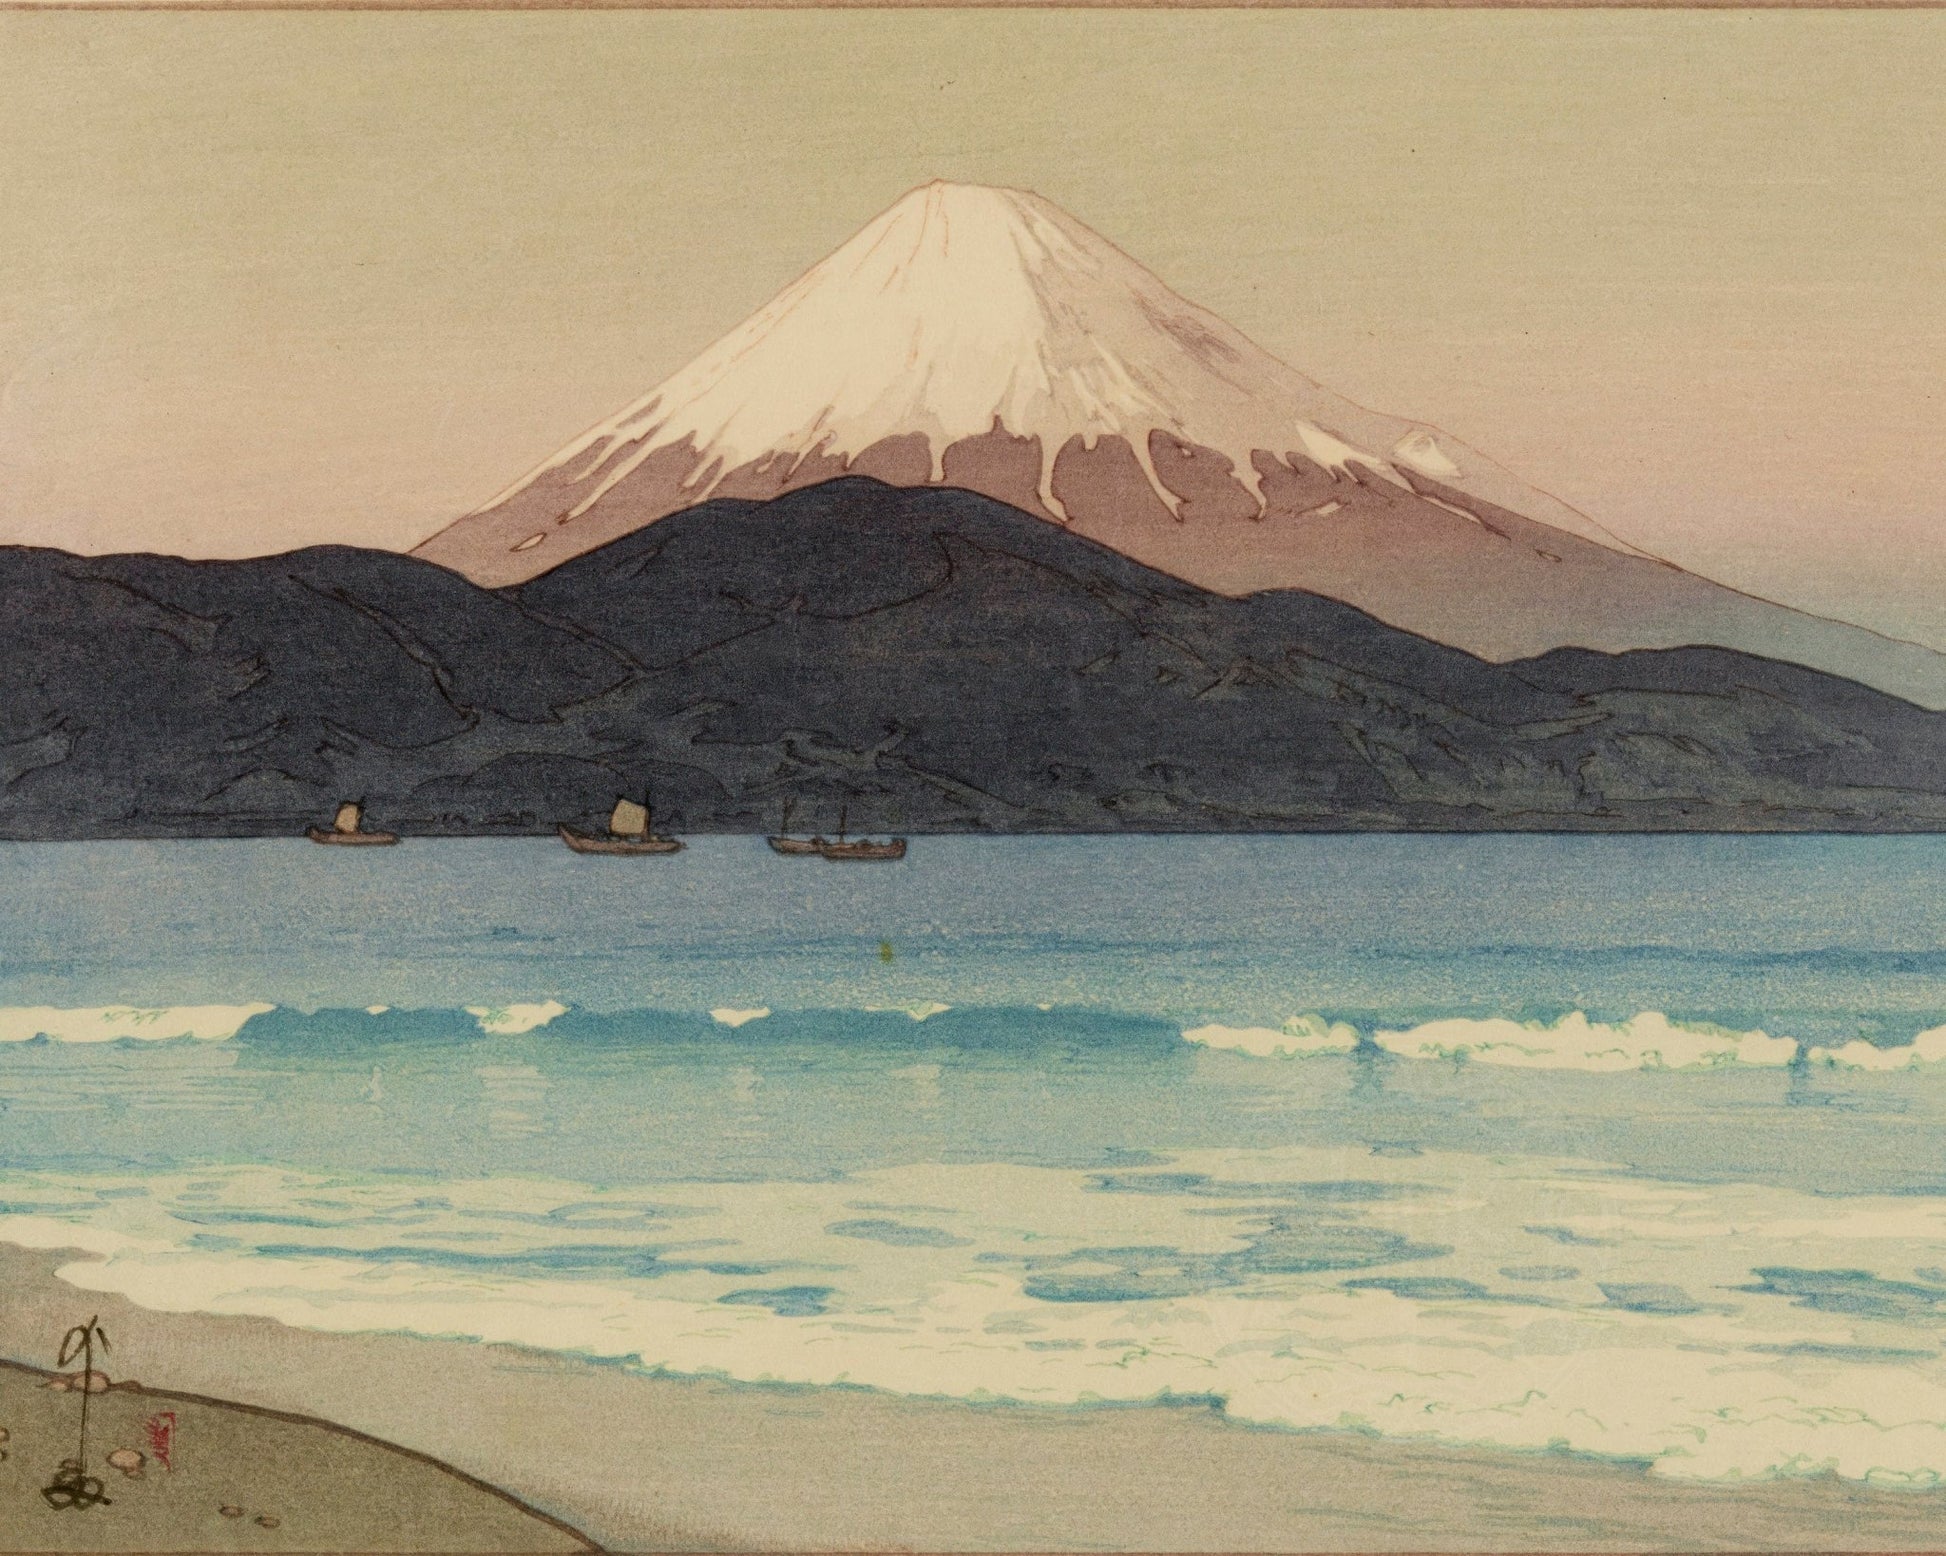 Yoshida Hiroshi "Fujiyama from Miho" (c.1935) - Mabon Gallery